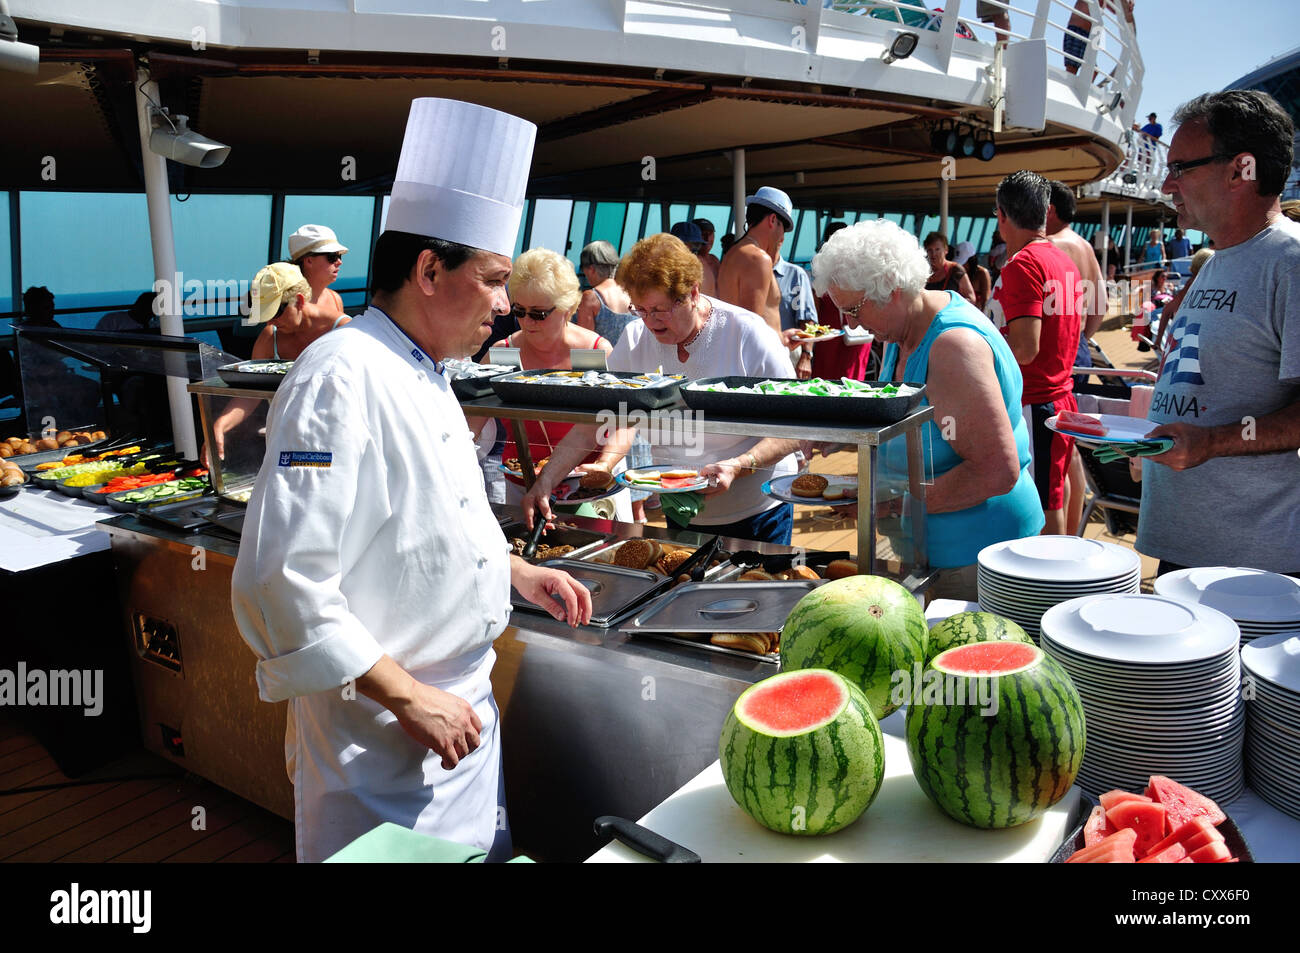 Koch das Mittagessen an Deck von Royal Caribbean "Grandeur of the Seas" Kreuzfahrt Schiff, Adria, Mittelmeer, Europa Stockfoto